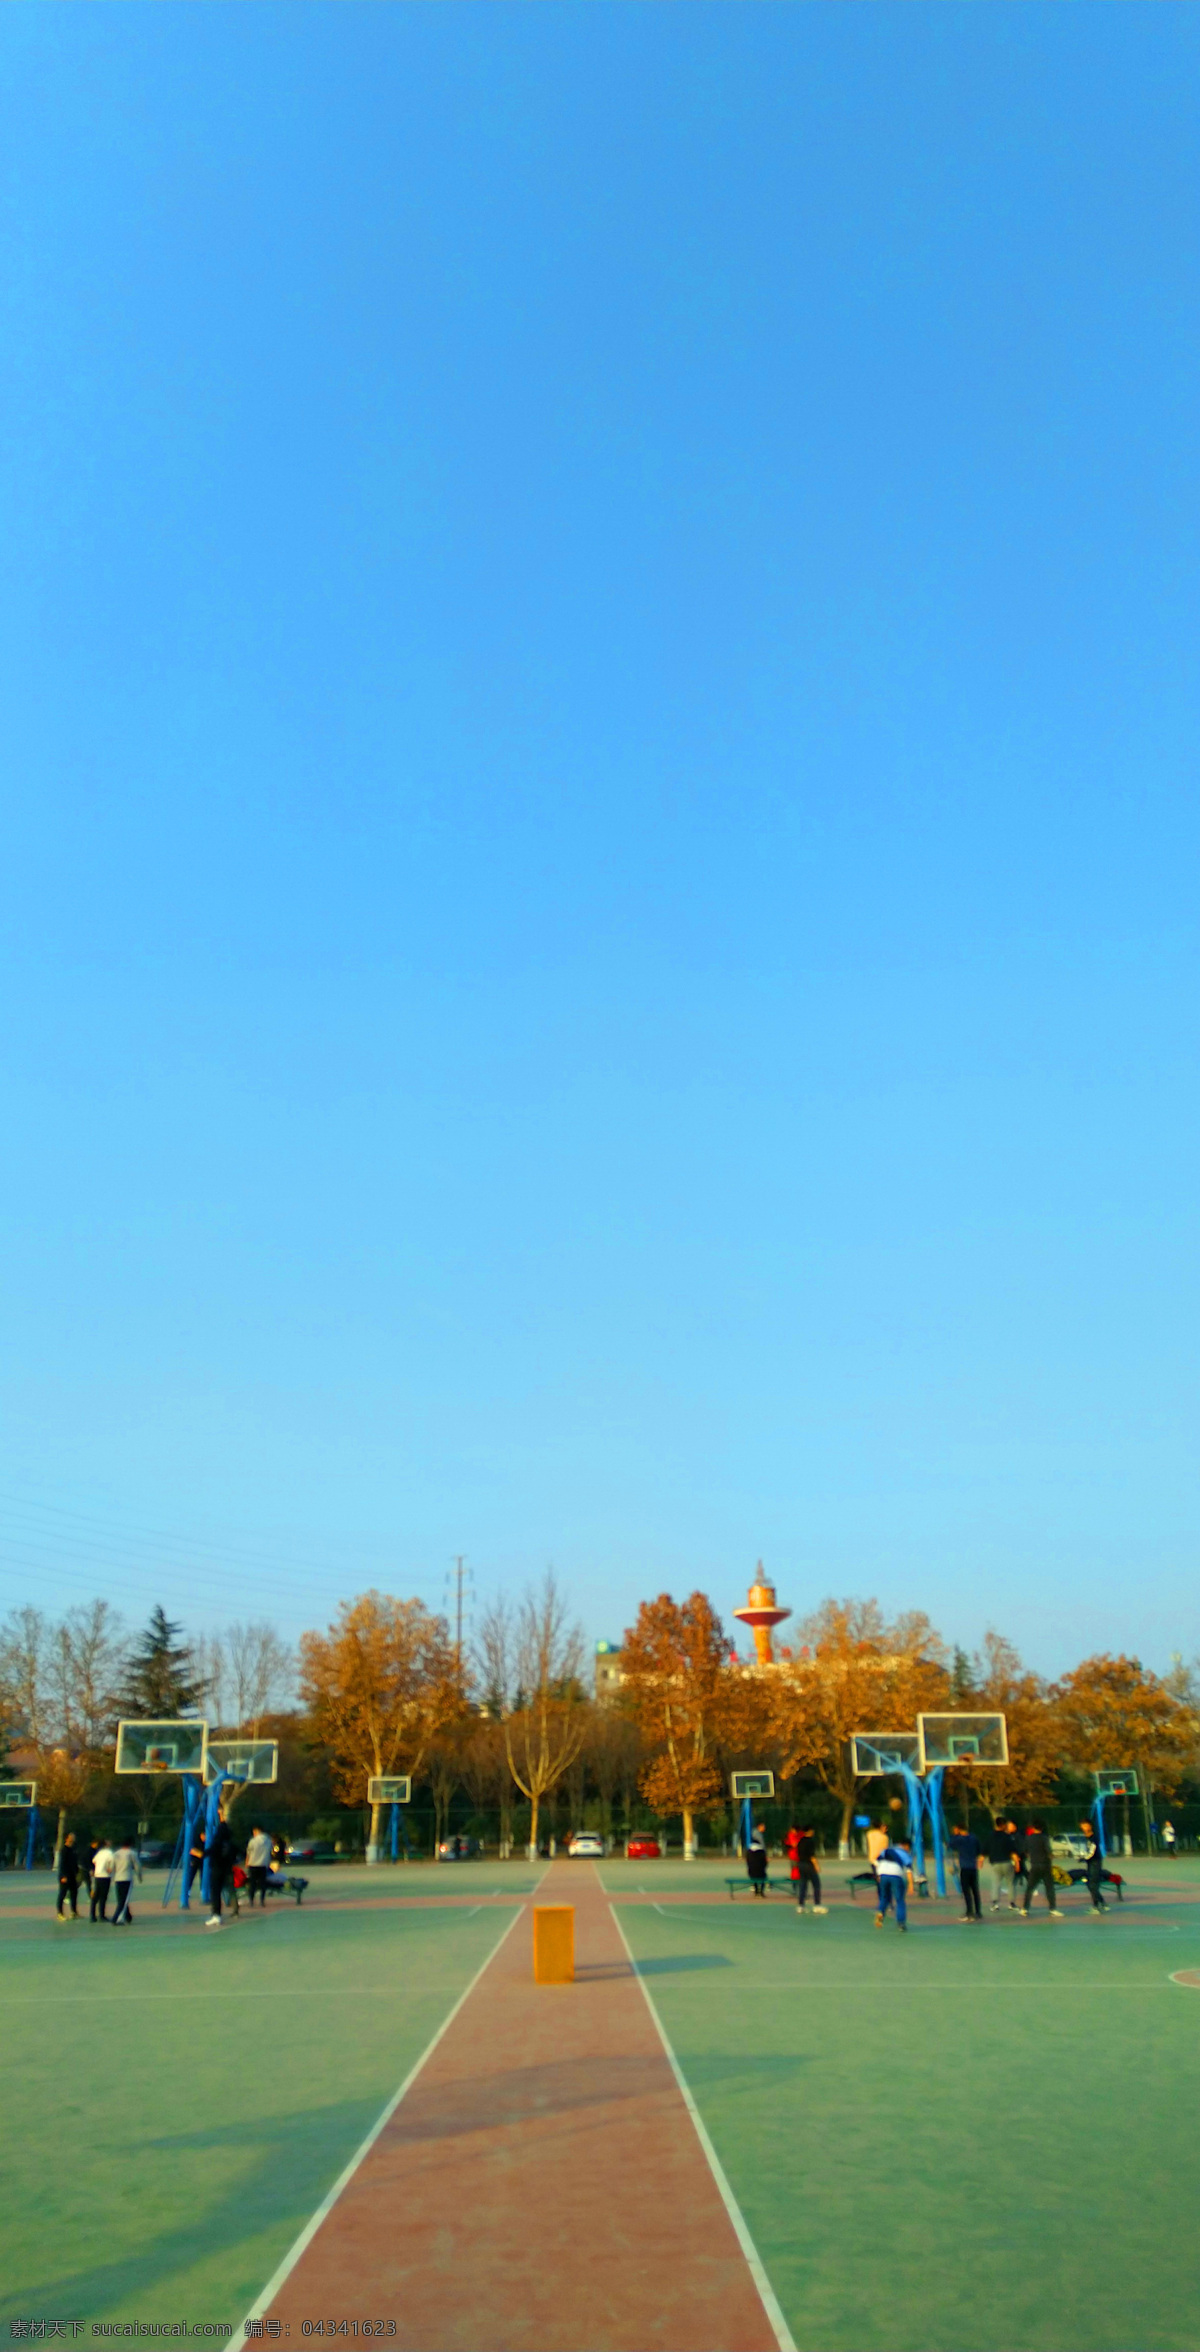 蓝天 下 篮球场 操场 夕阳 高楼 天空 树木 运动 体育 激情 建筑景观 文化艺术 体育运动